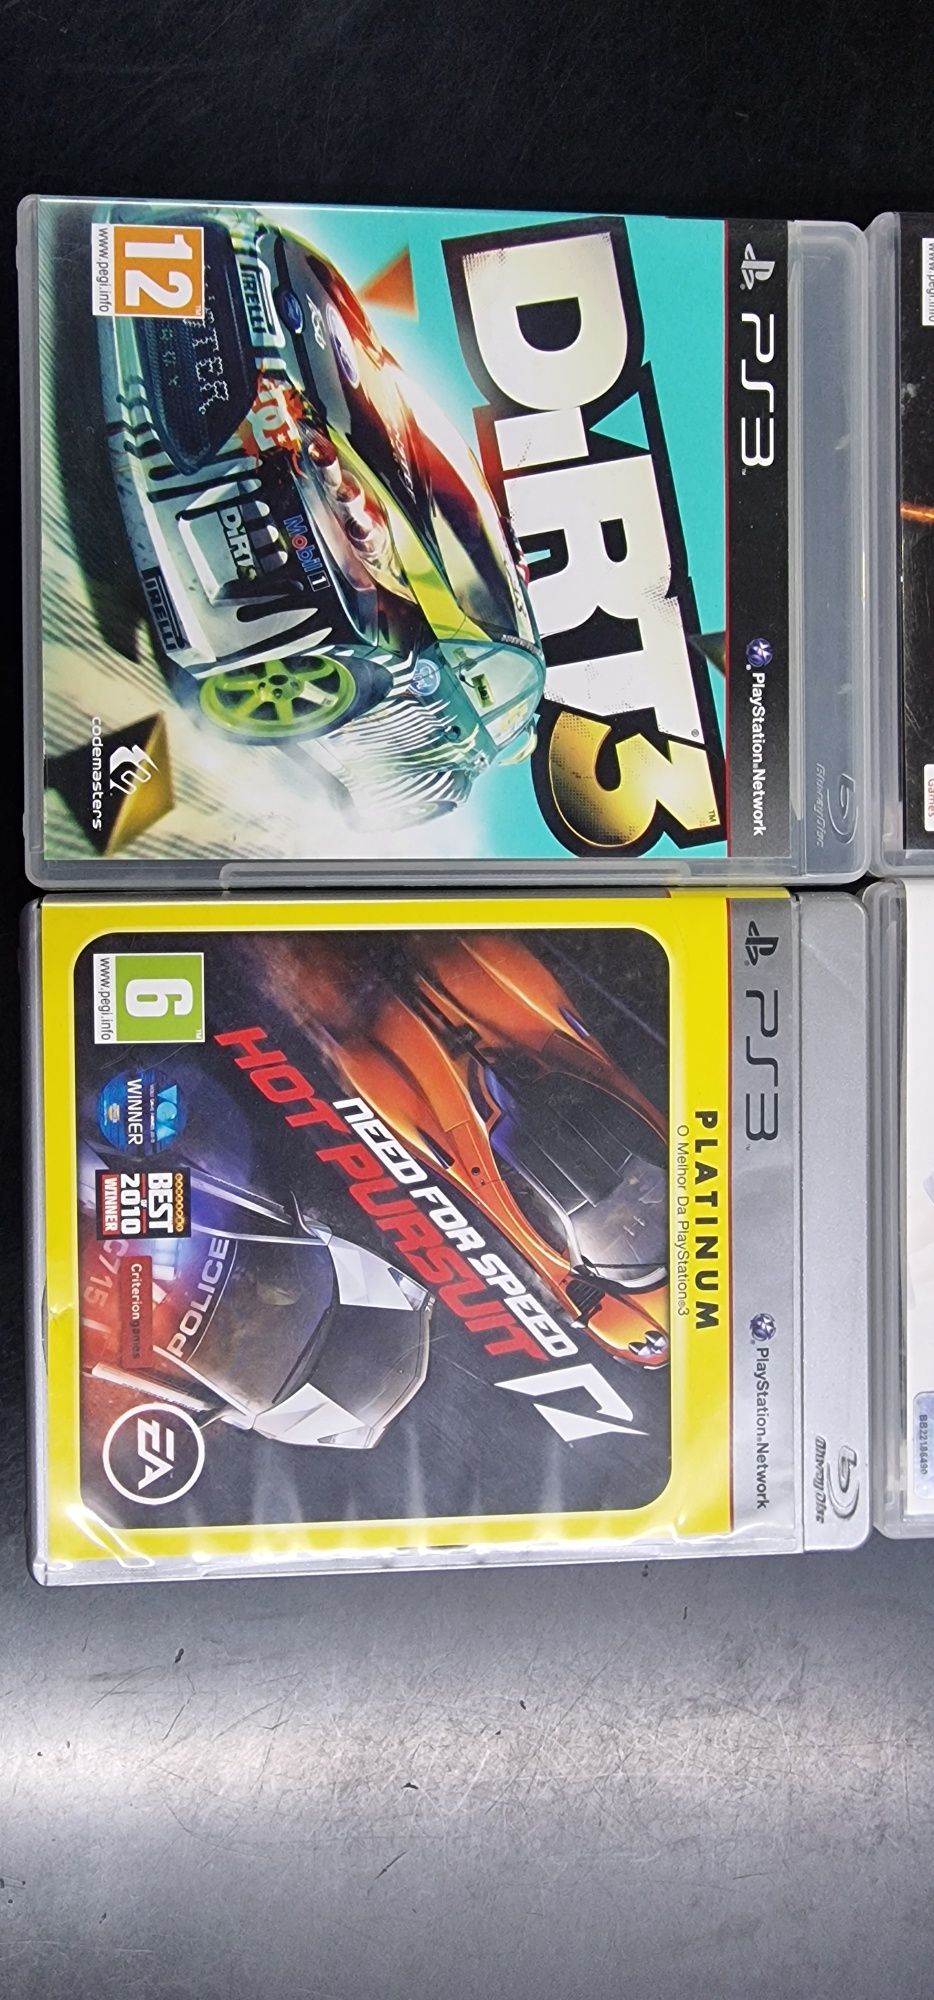 Jogos PS3 usados